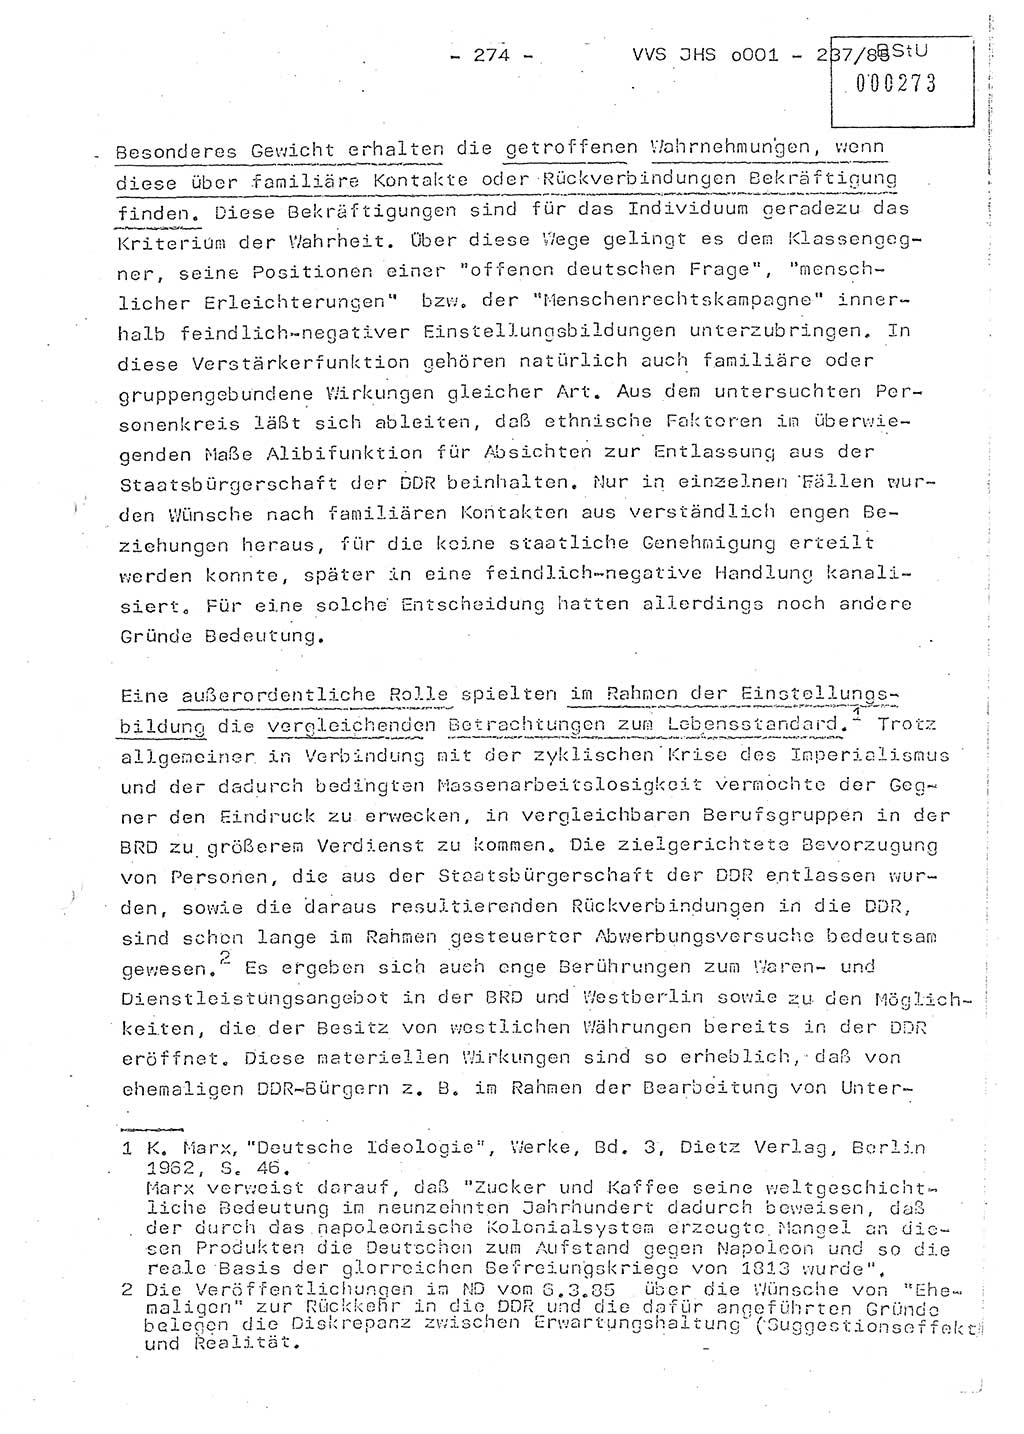 Dissertation Oberstleutnant Peter Jakulski (JHS), Oberstleutnat Christian Rudolph (HA Ⅸ), Major Horst Böttger (ZMD), Major Wolfgang Grüneberg (JHS), Major Albert Meutsch (JHS), Ministerium für Staatssicherheit (MfS) [Deutsche Demokratische Republik (DDR)], Juristische Hochschule (JHS), Vertrauliche Verschlußsache (VVS) o001-237/85, Potsdam 1985, Seite 274 (Diss. MfS DDR JHS VVS o001-237/85 1985, S. 274)